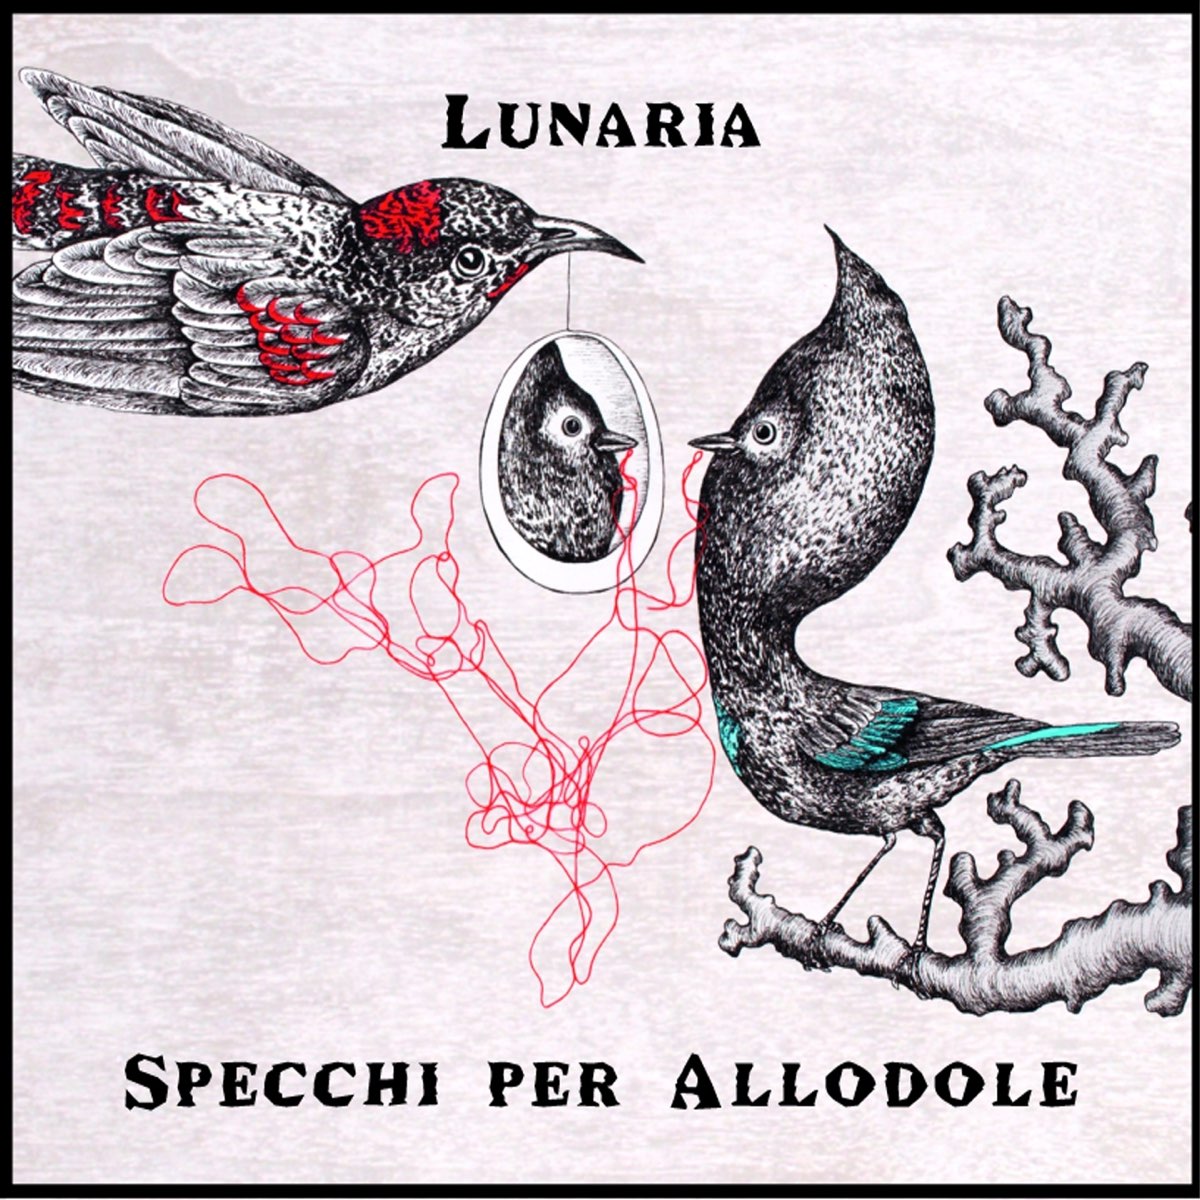 Specchi per allodole - Album di Lunaria - Apple Music